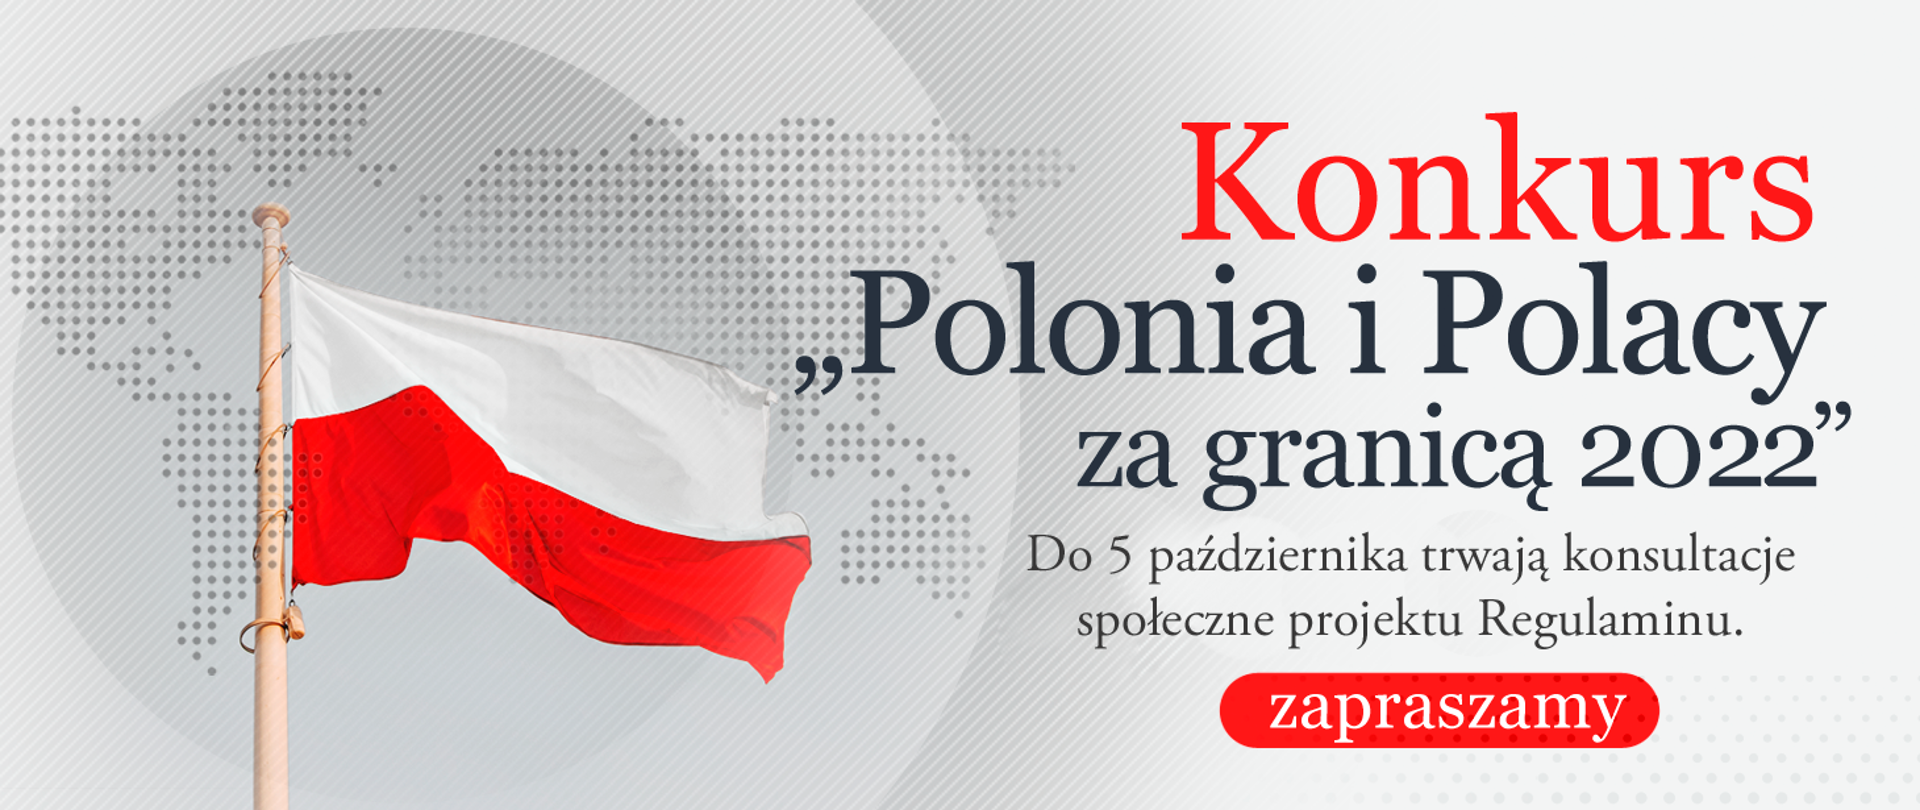 Konsultacje społeczne Konkursu "Polonia i Polacy za granicą 2022"